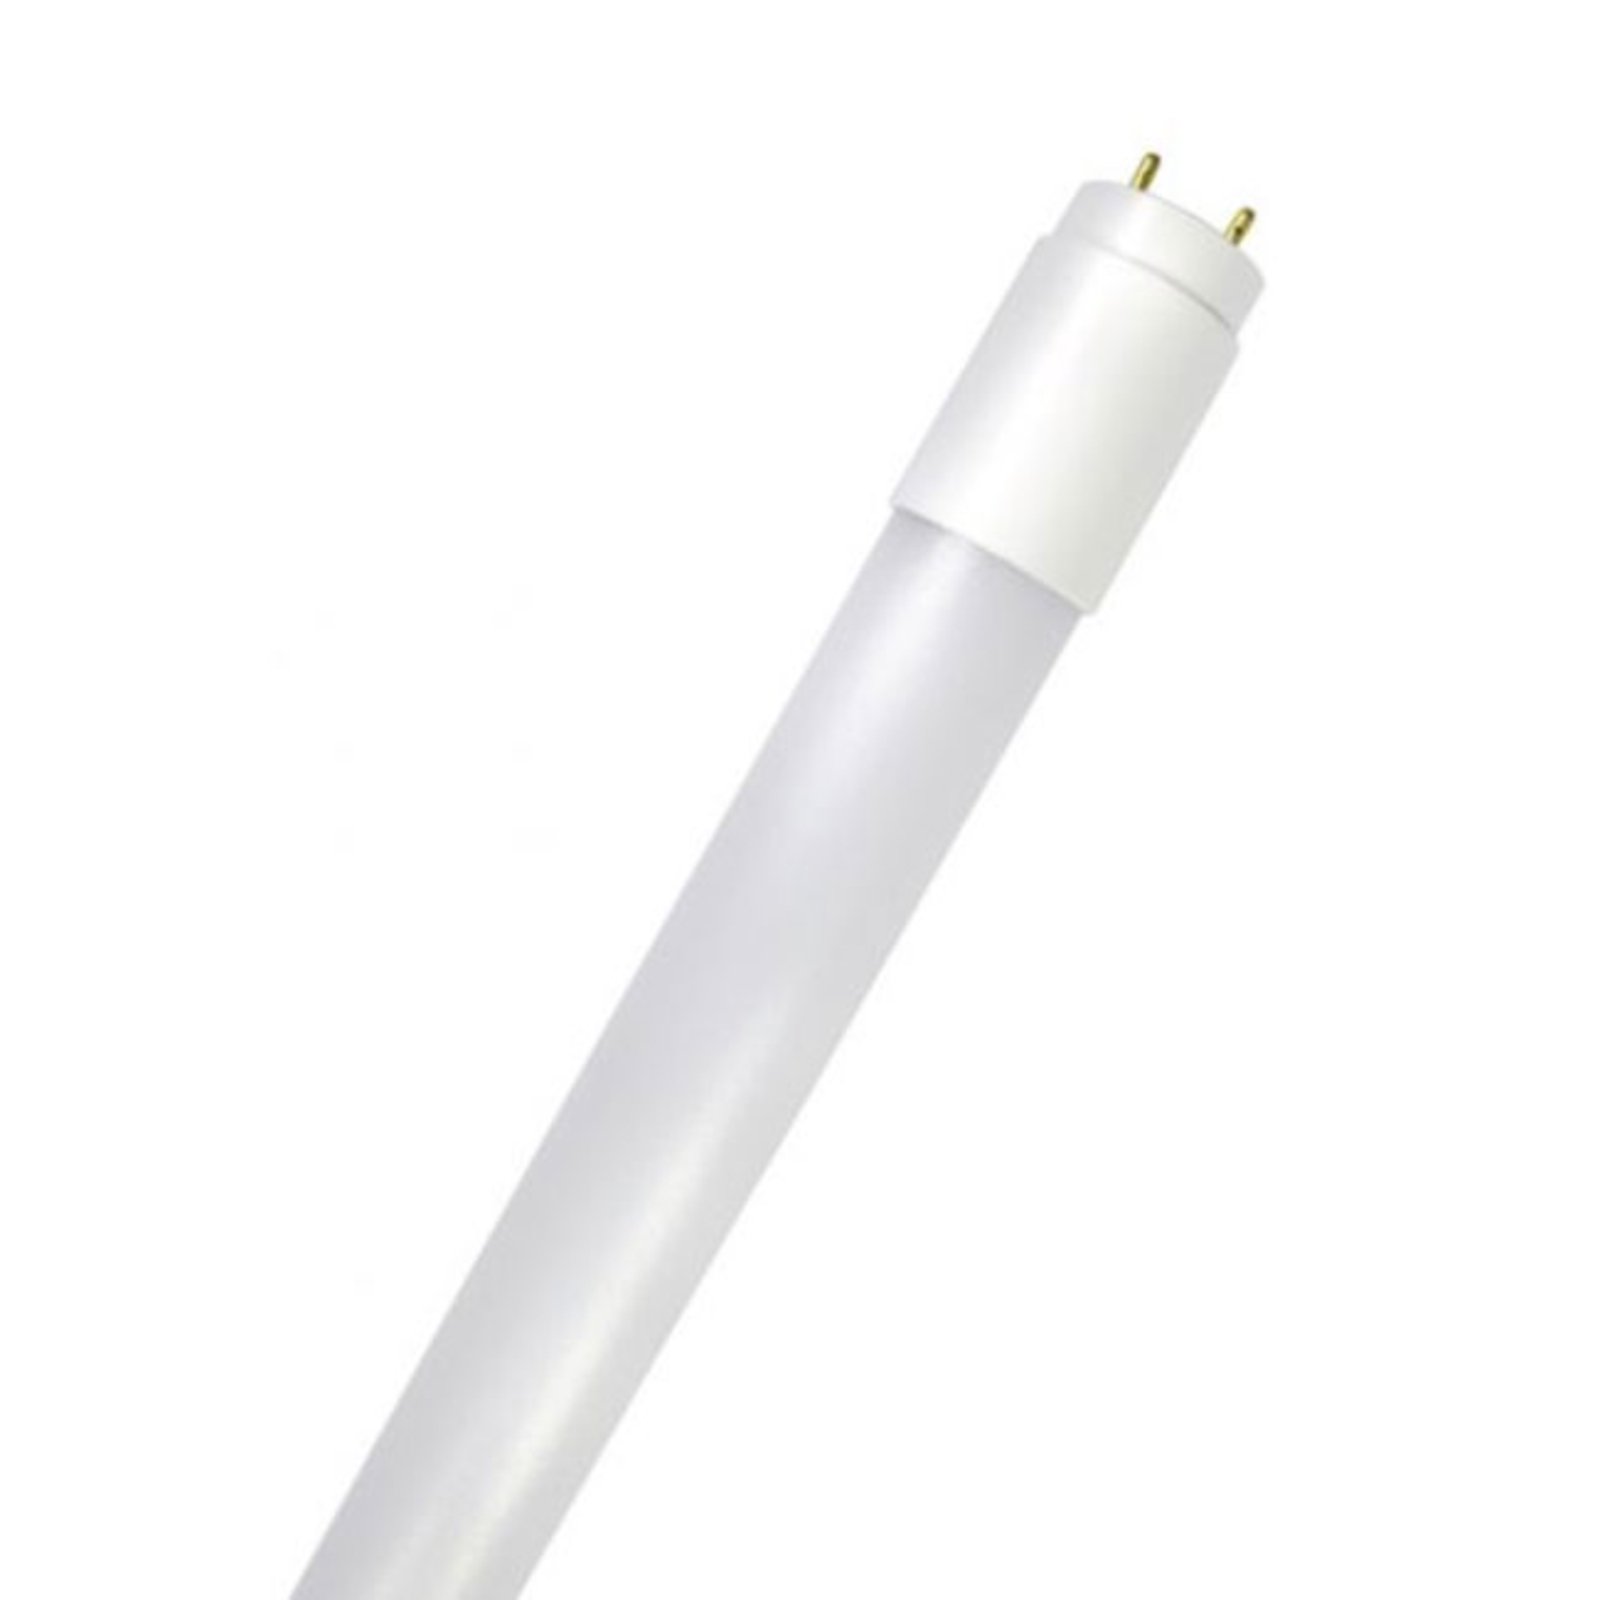 LED tube GoLeaf T8 G13 full spectrum 19 W 150 cm